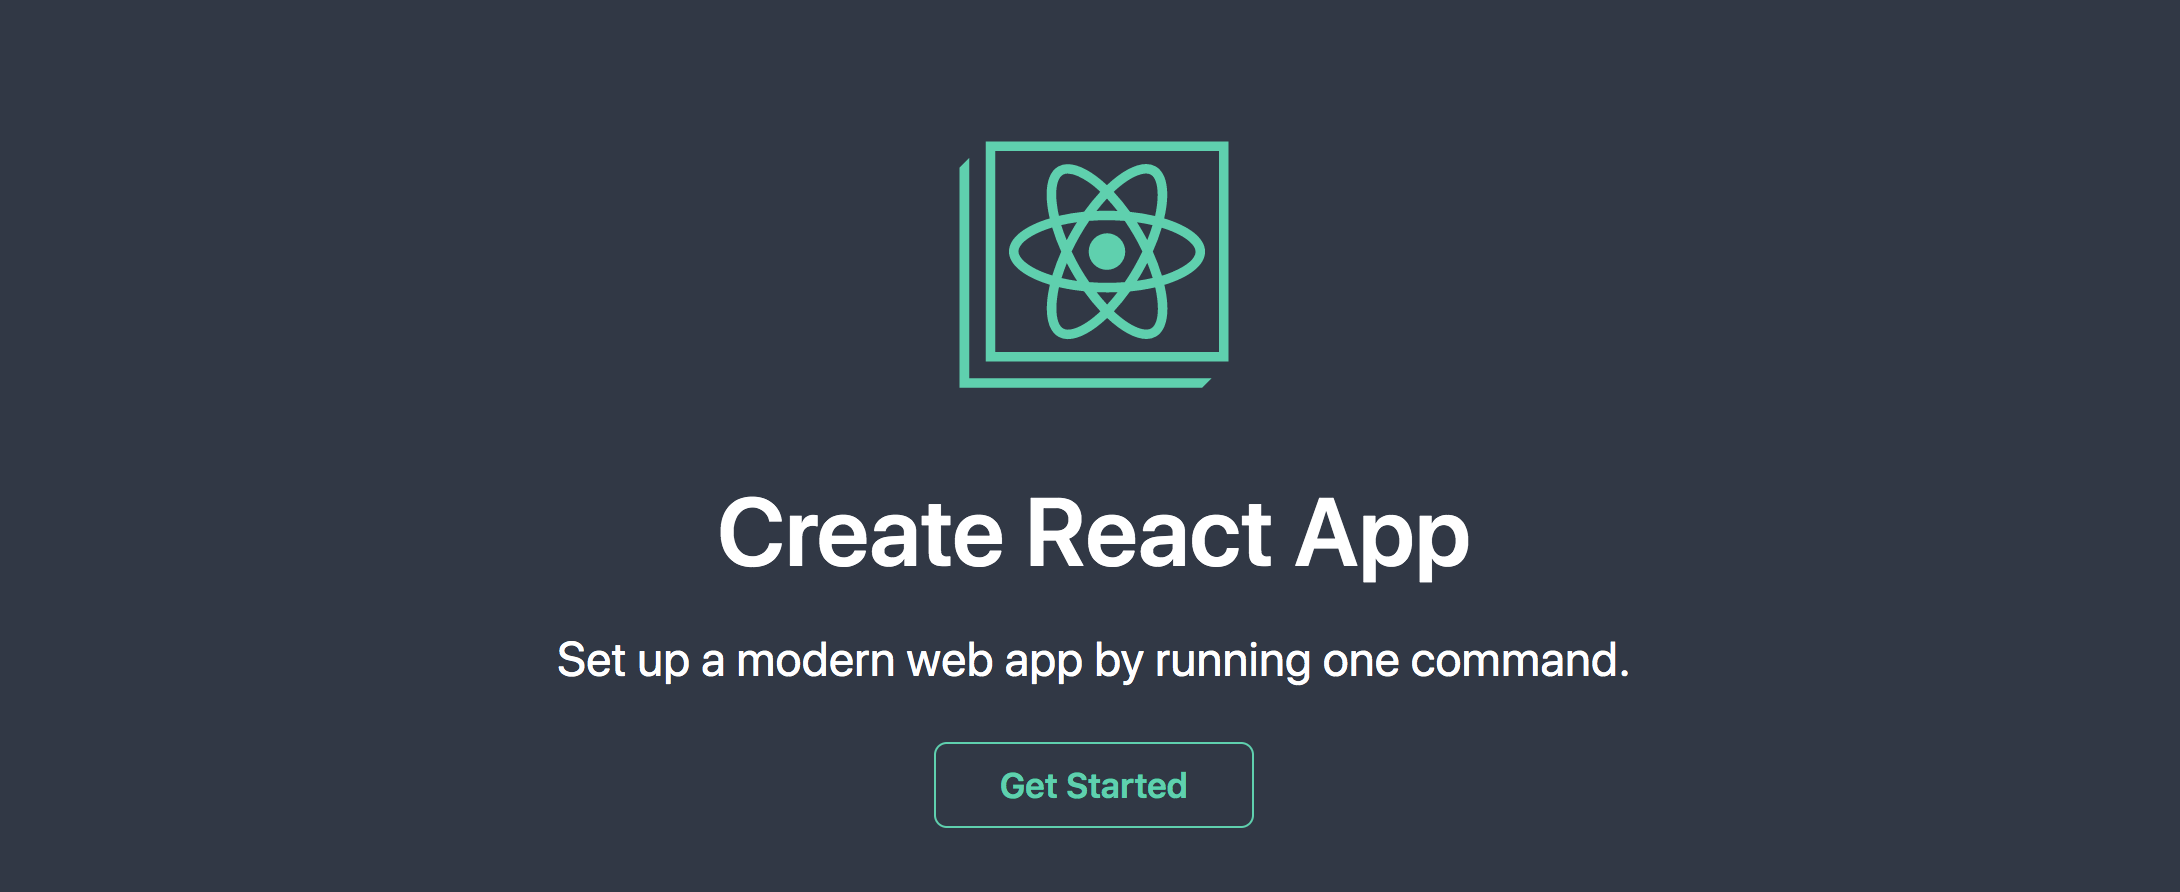 Create React App - React